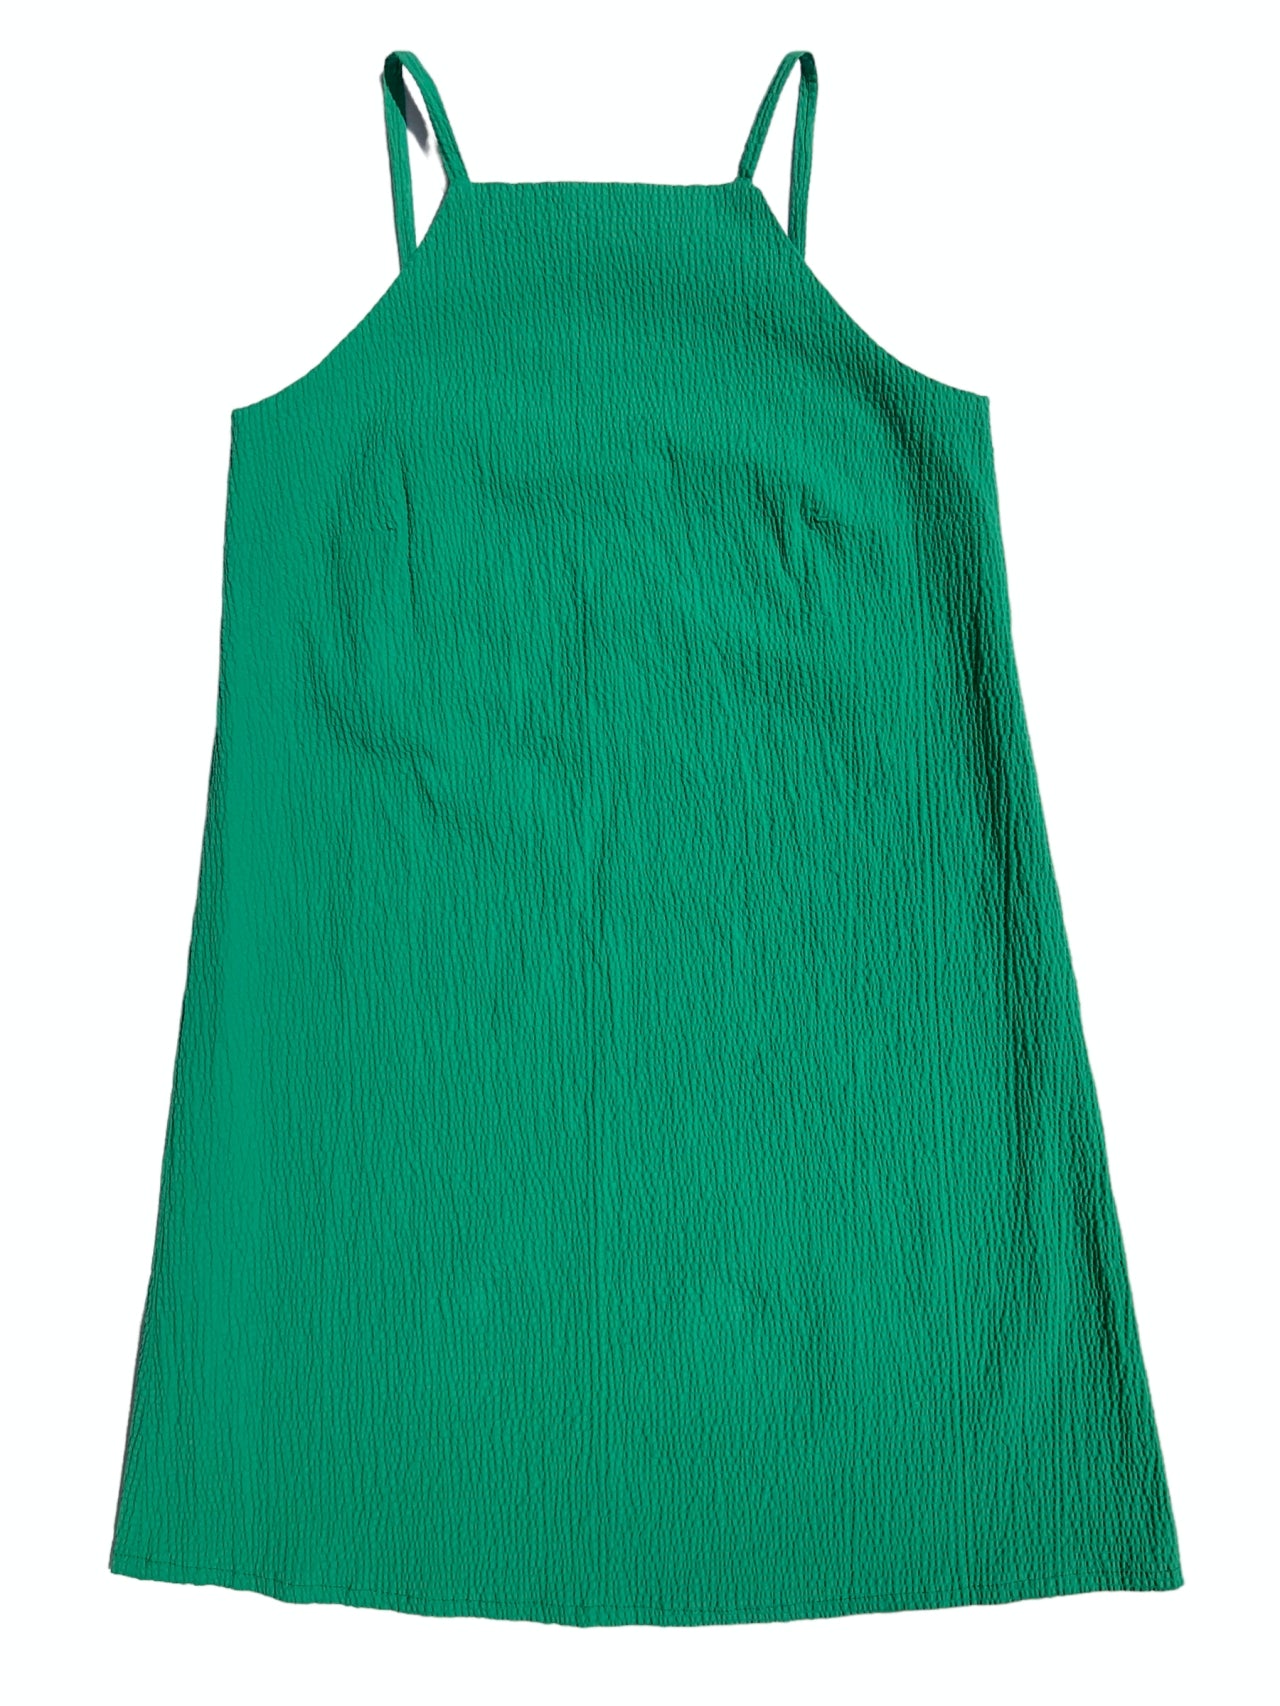 Summer Dress - Emerald Green